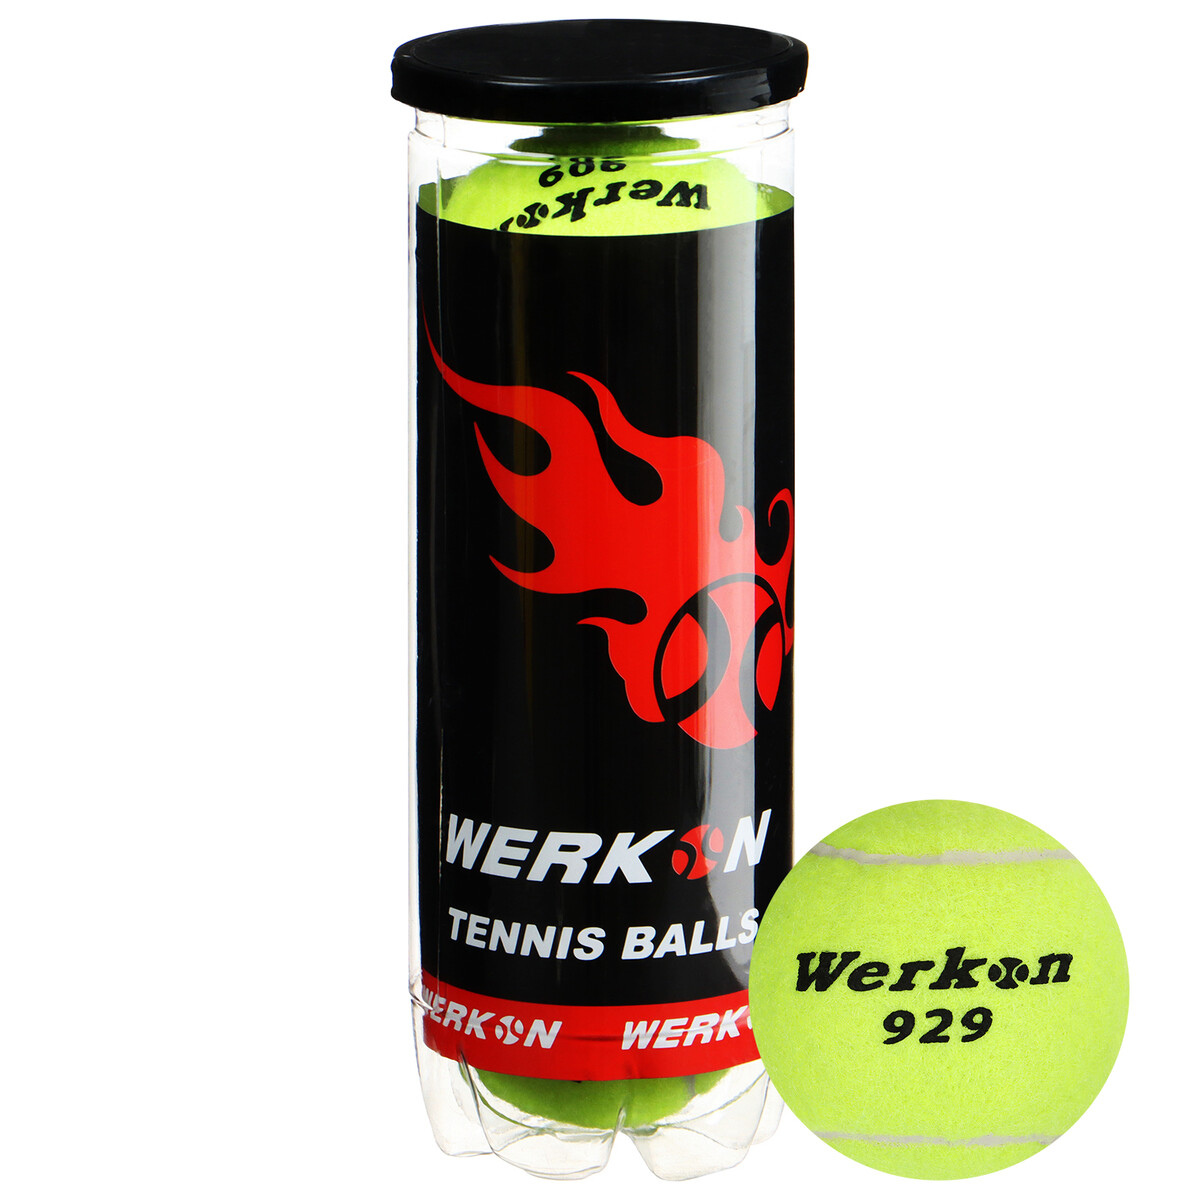 Набор мячей для большого тенниса werkon 929 в тубе, 3 шт. набор зажимов для бумаг 19 мм 40 штук в пластиковой тубе черные